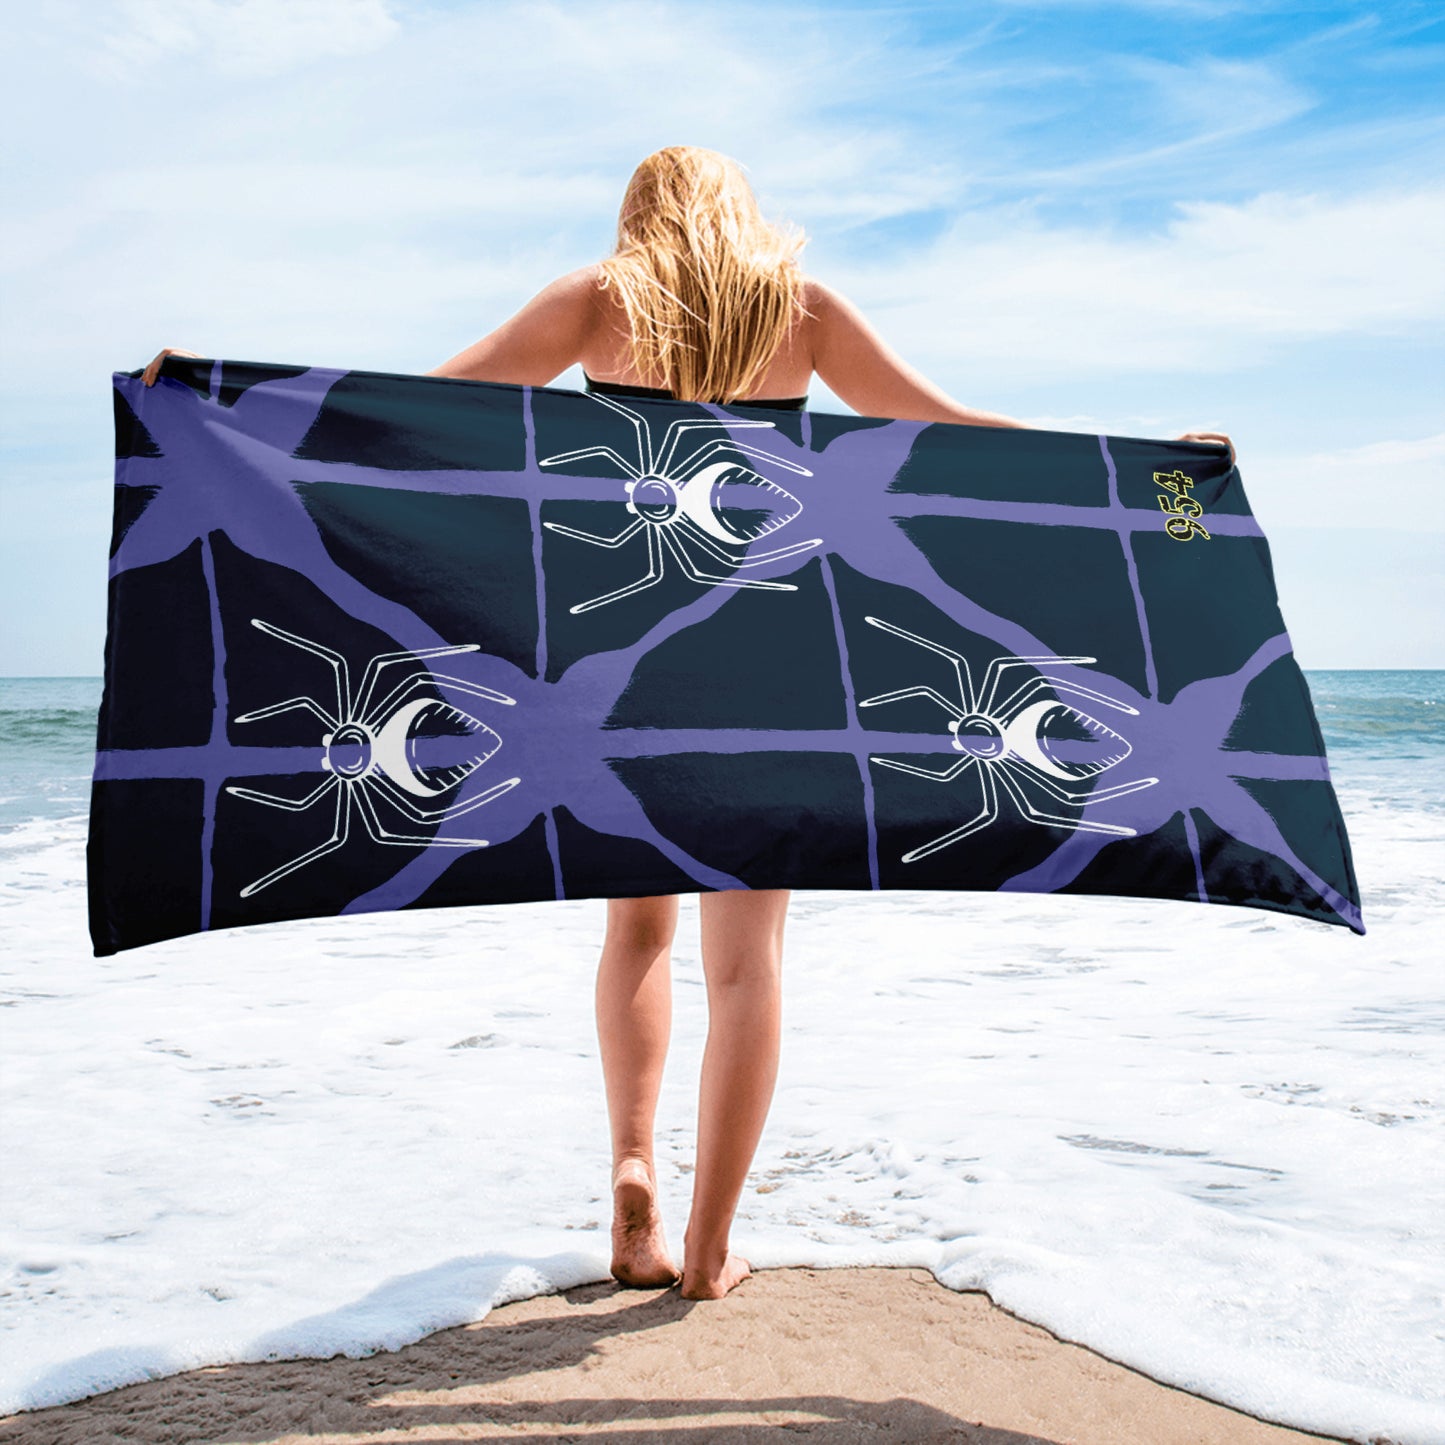 Spider 954 Signature Beach Towel